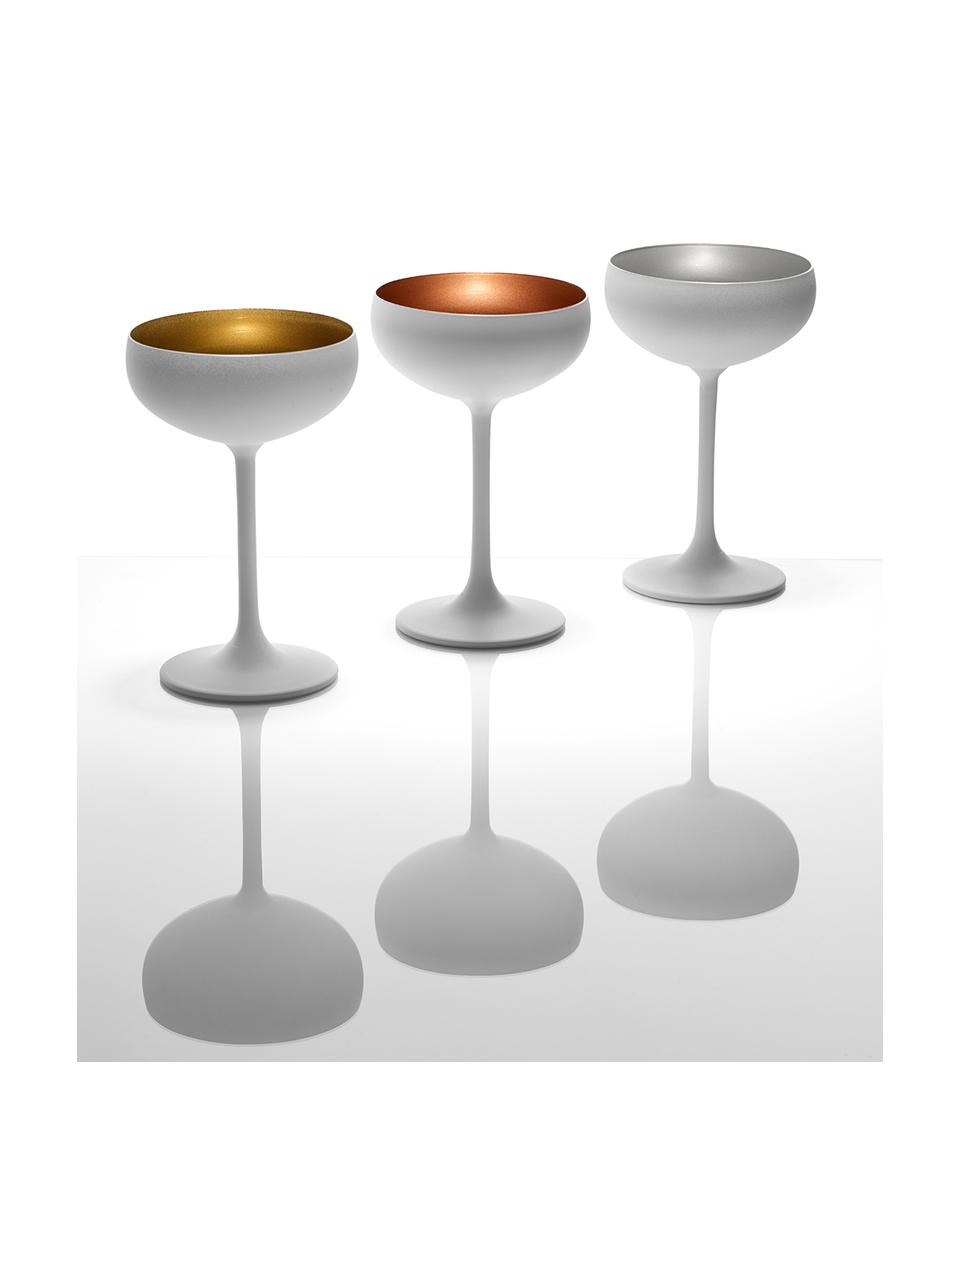 Kristall-Champagnerschalen Elements in Weiß/Kupfer, 6 Stück, Kristallglas, beschichtet, Weiß, Bronzefarben, Ø 10 x H 15 cm